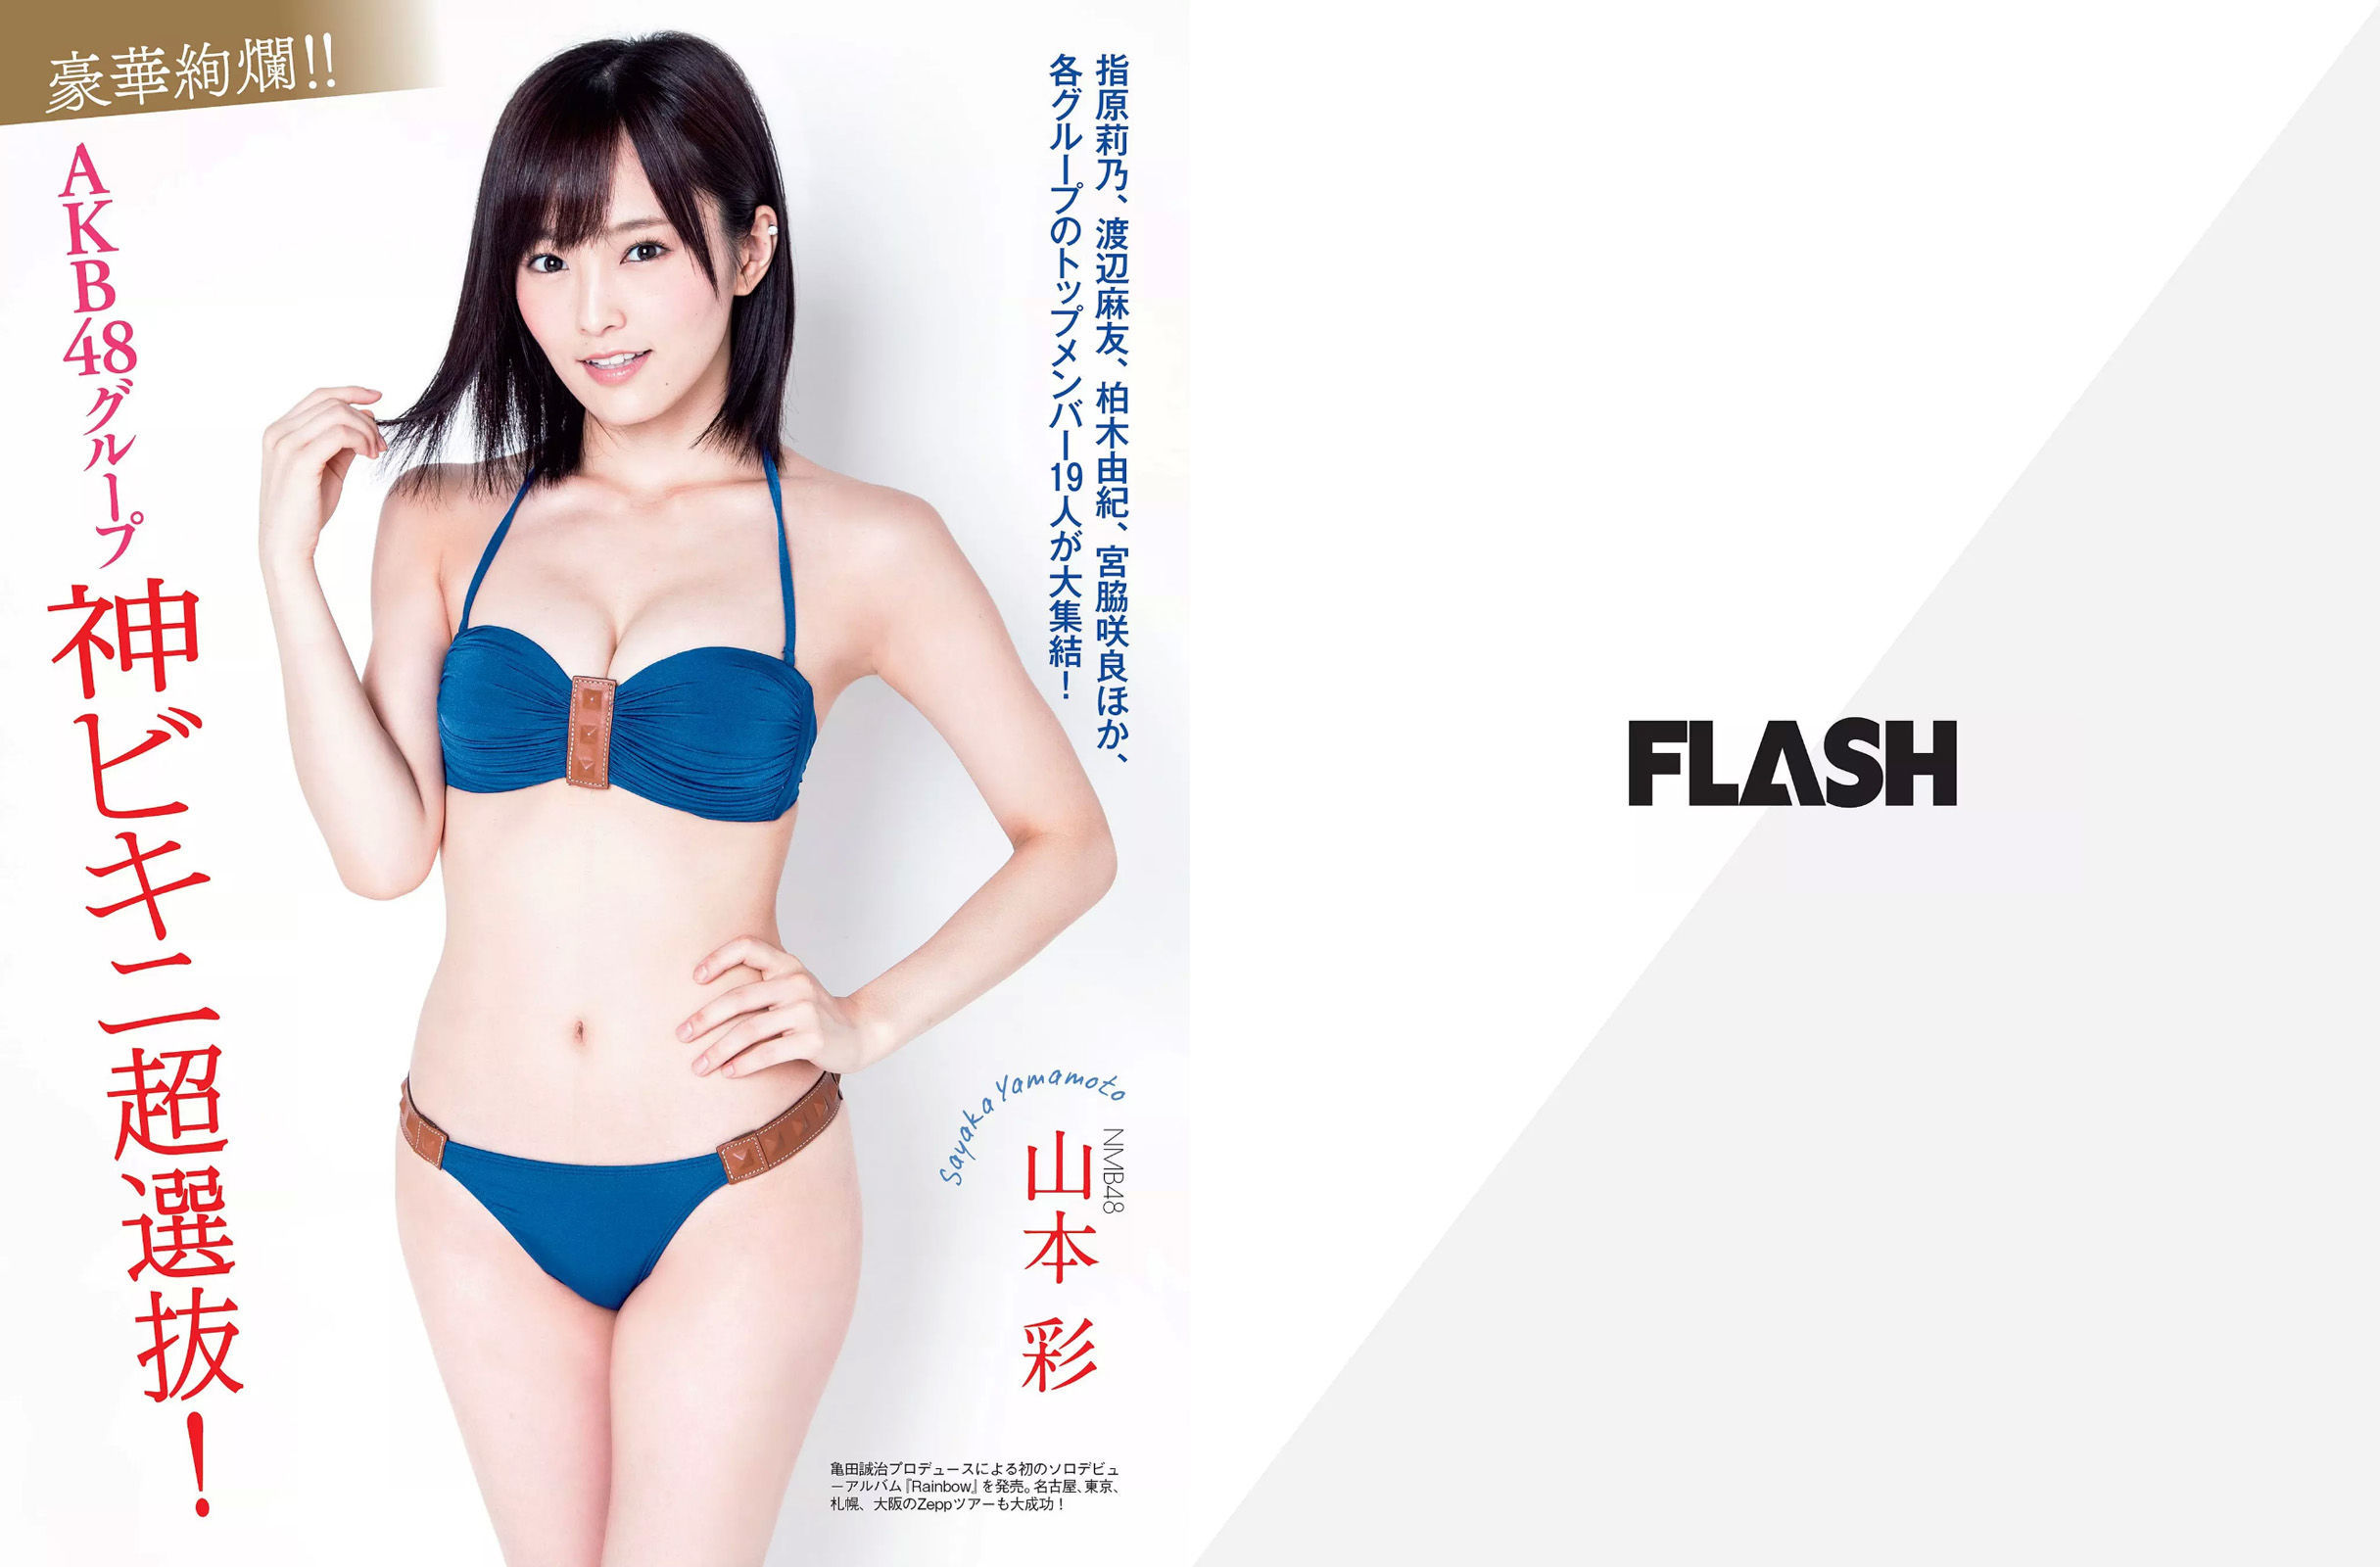 [FLASH]杂志:佐藤宽子高品质私家拍摄作品在线浏览(25P)